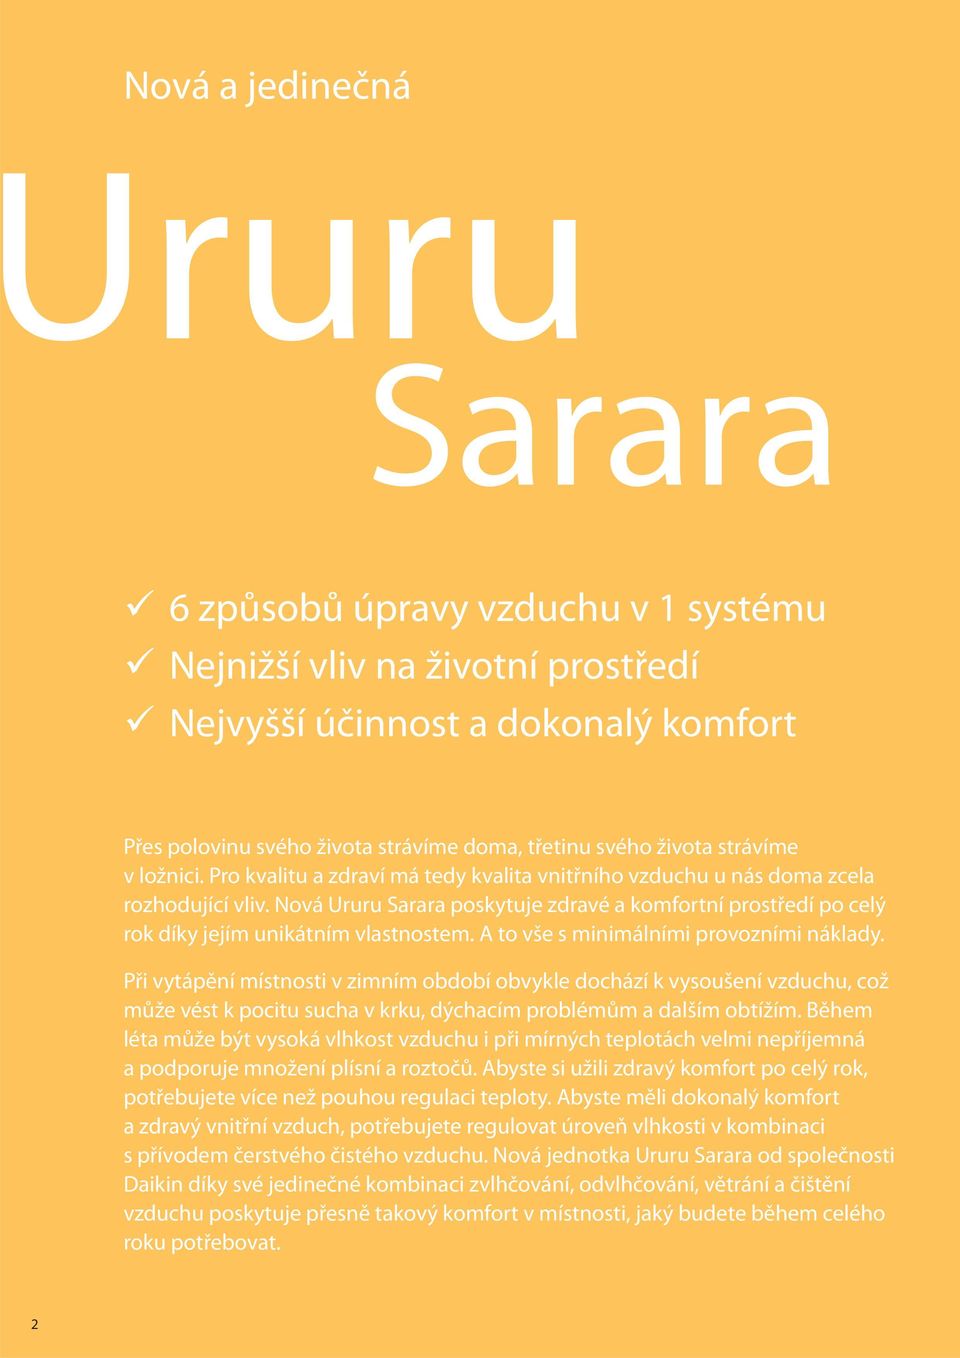 Nová Ururu Sarara poskytuje zdravé a komfortní prostředí po celý rok díky jejím unikátním vlastnostem. A to vše s minimálními provozními náklady.